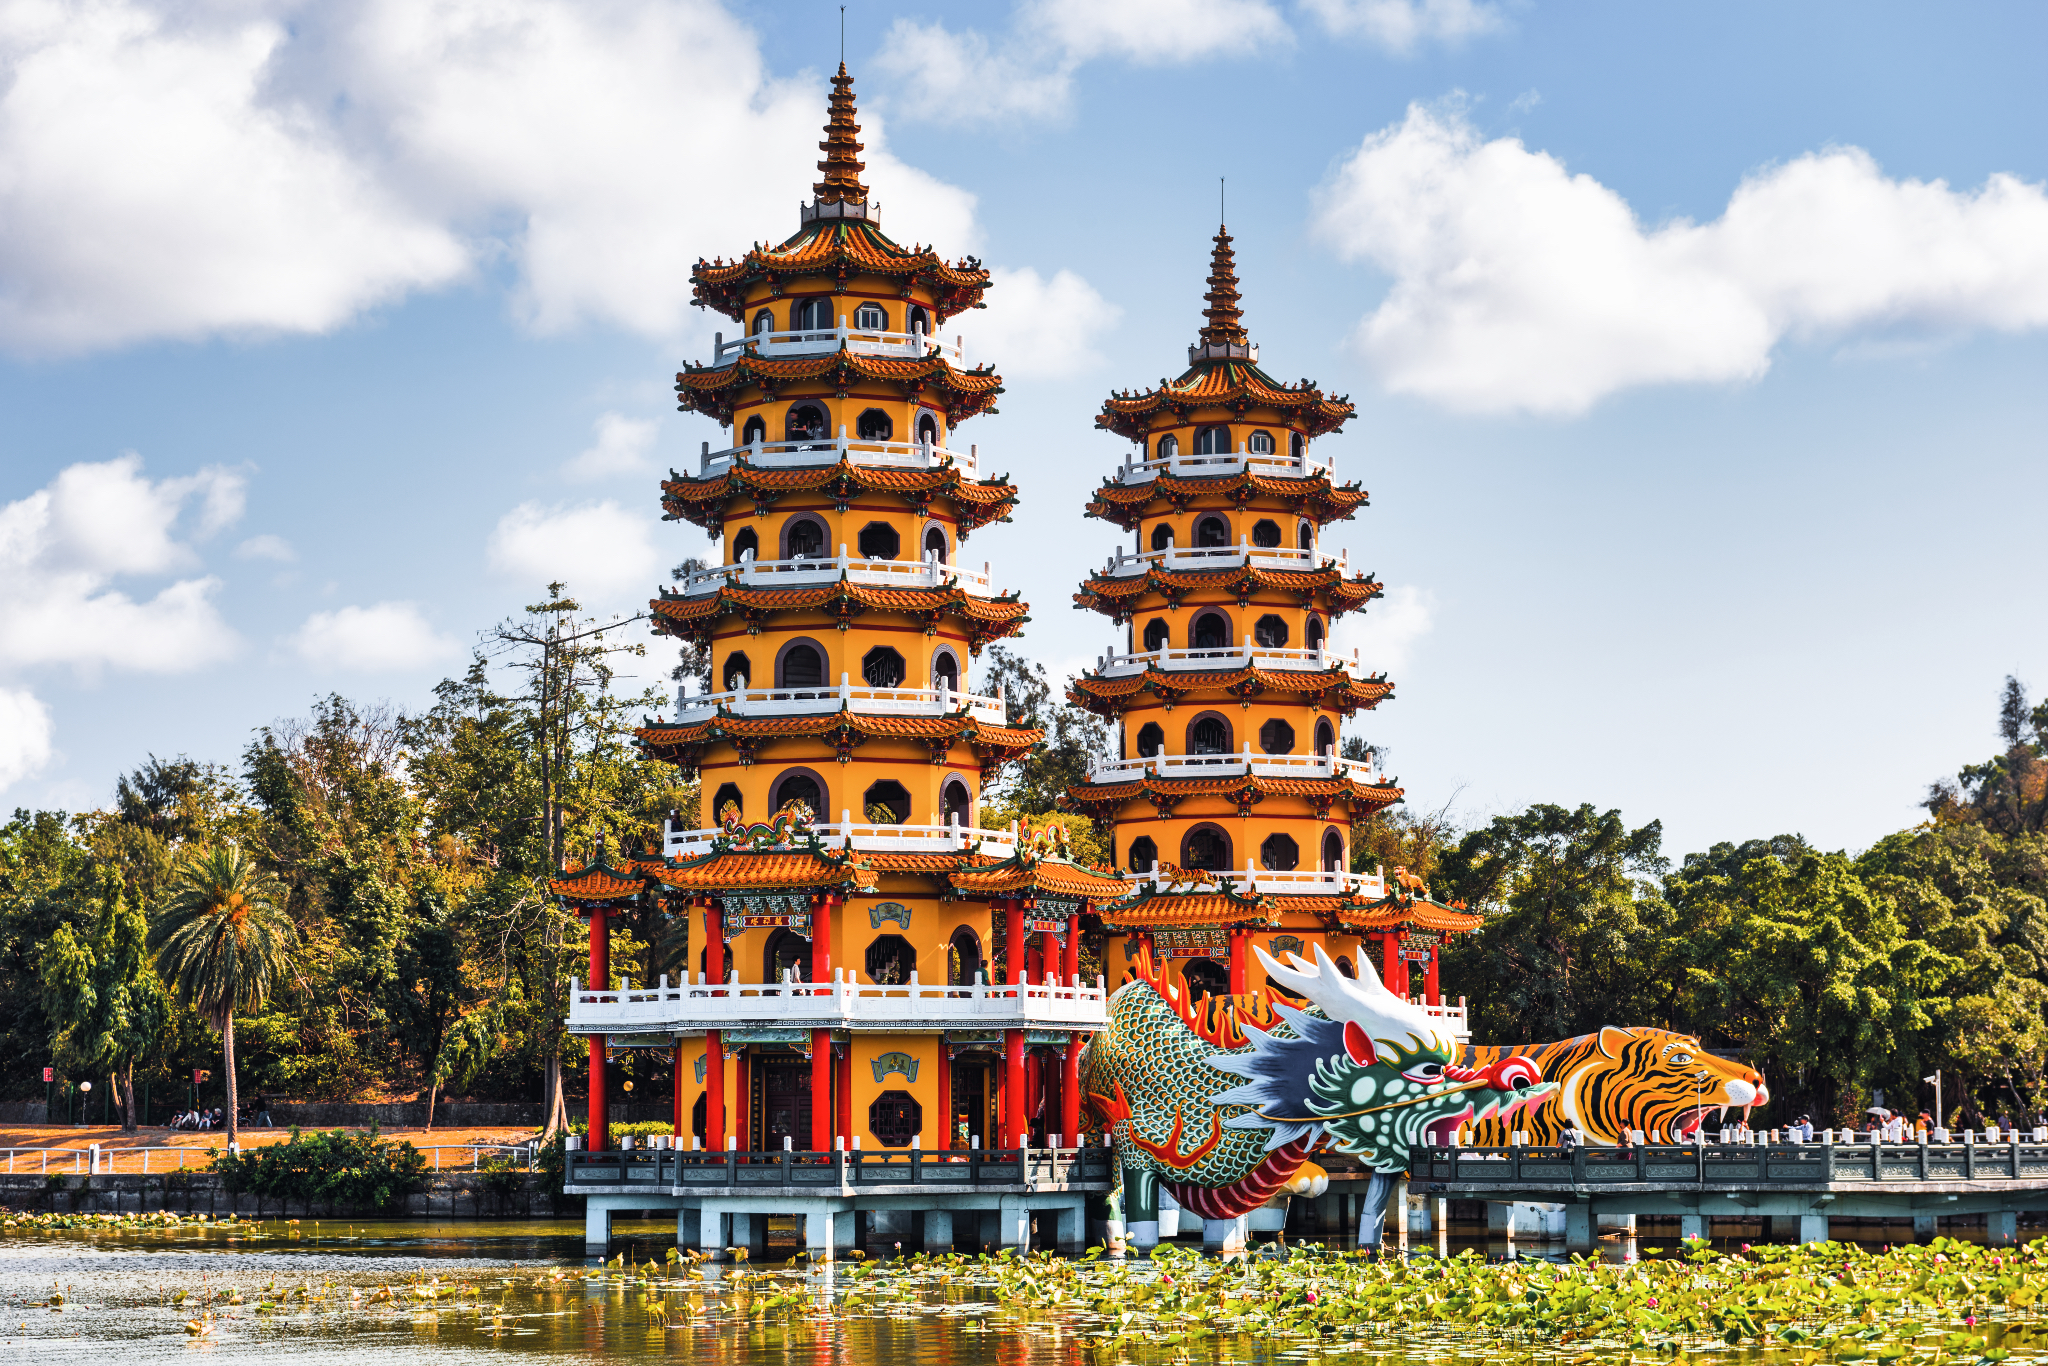 Kaohsiung, Taiwan Lotus Pond's Dragon and Tiger.